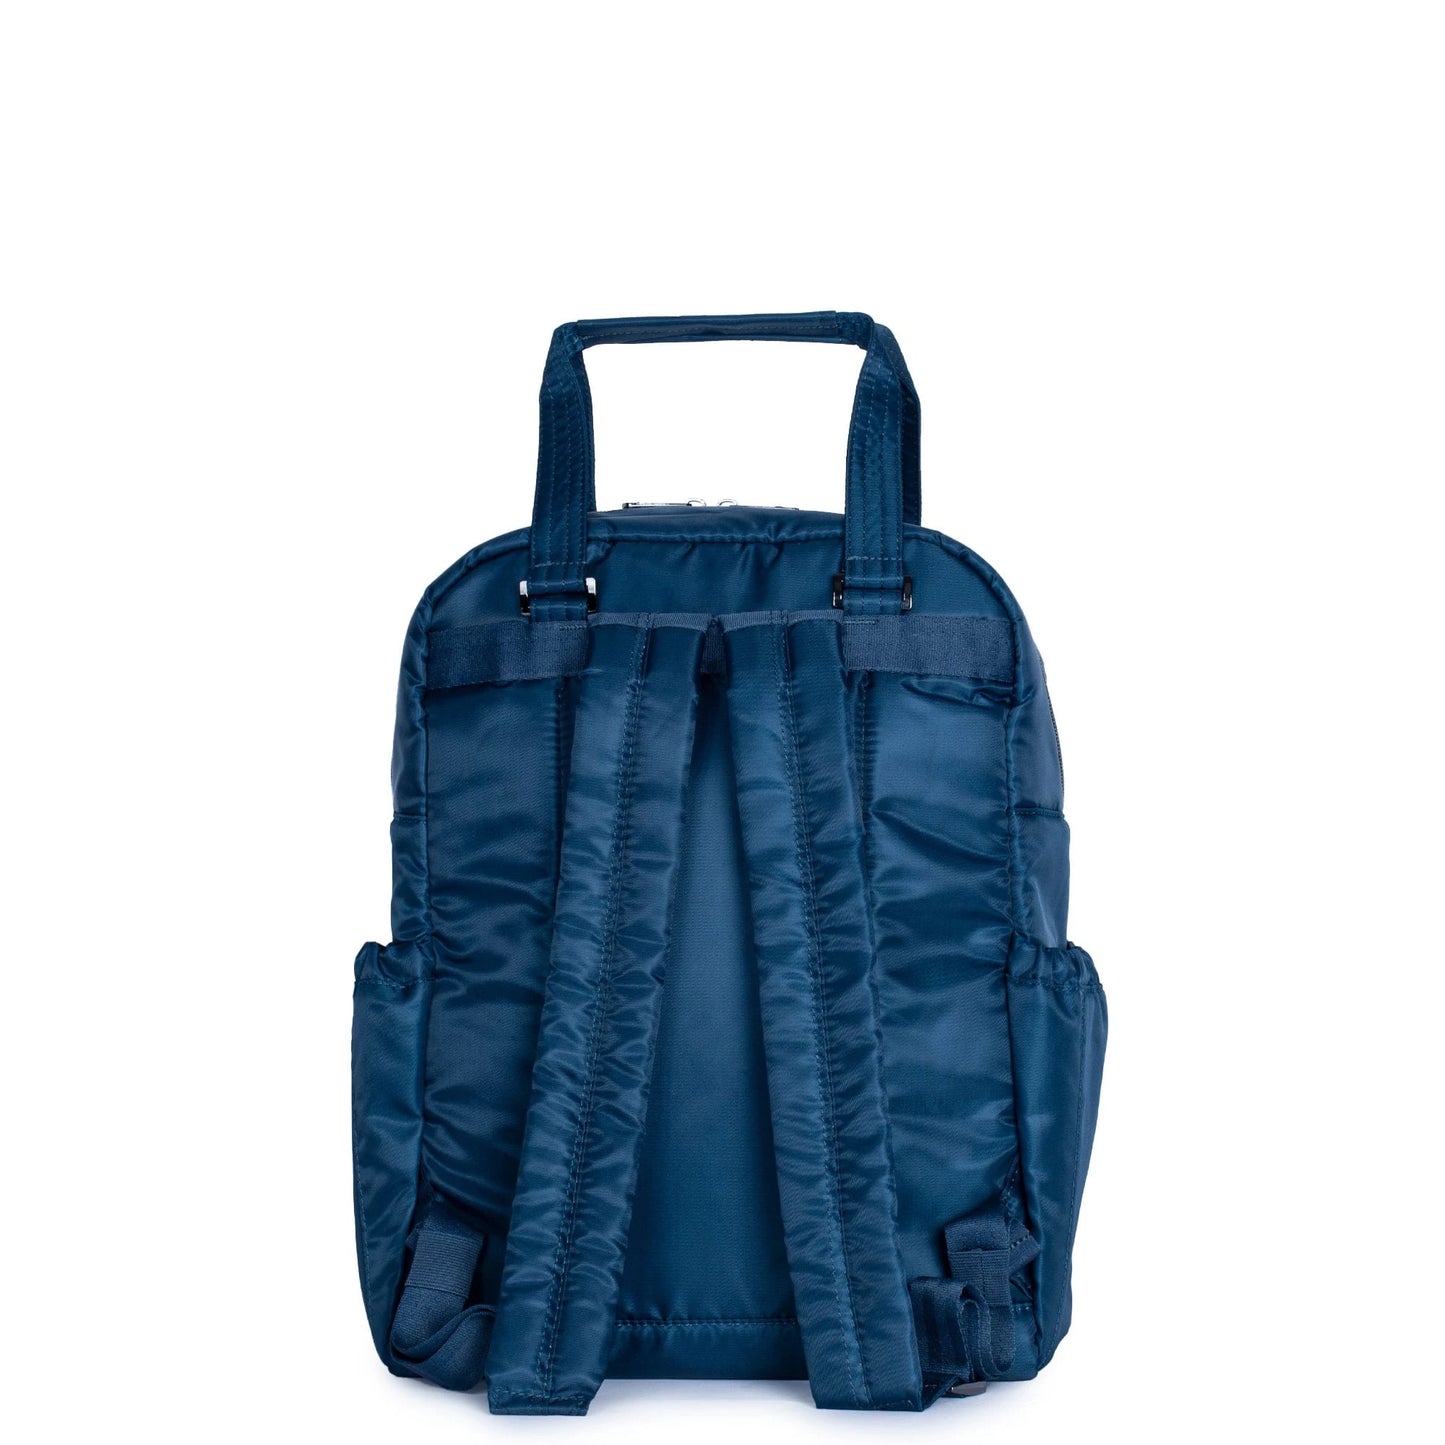 Lug Puddle Jumper Backpack